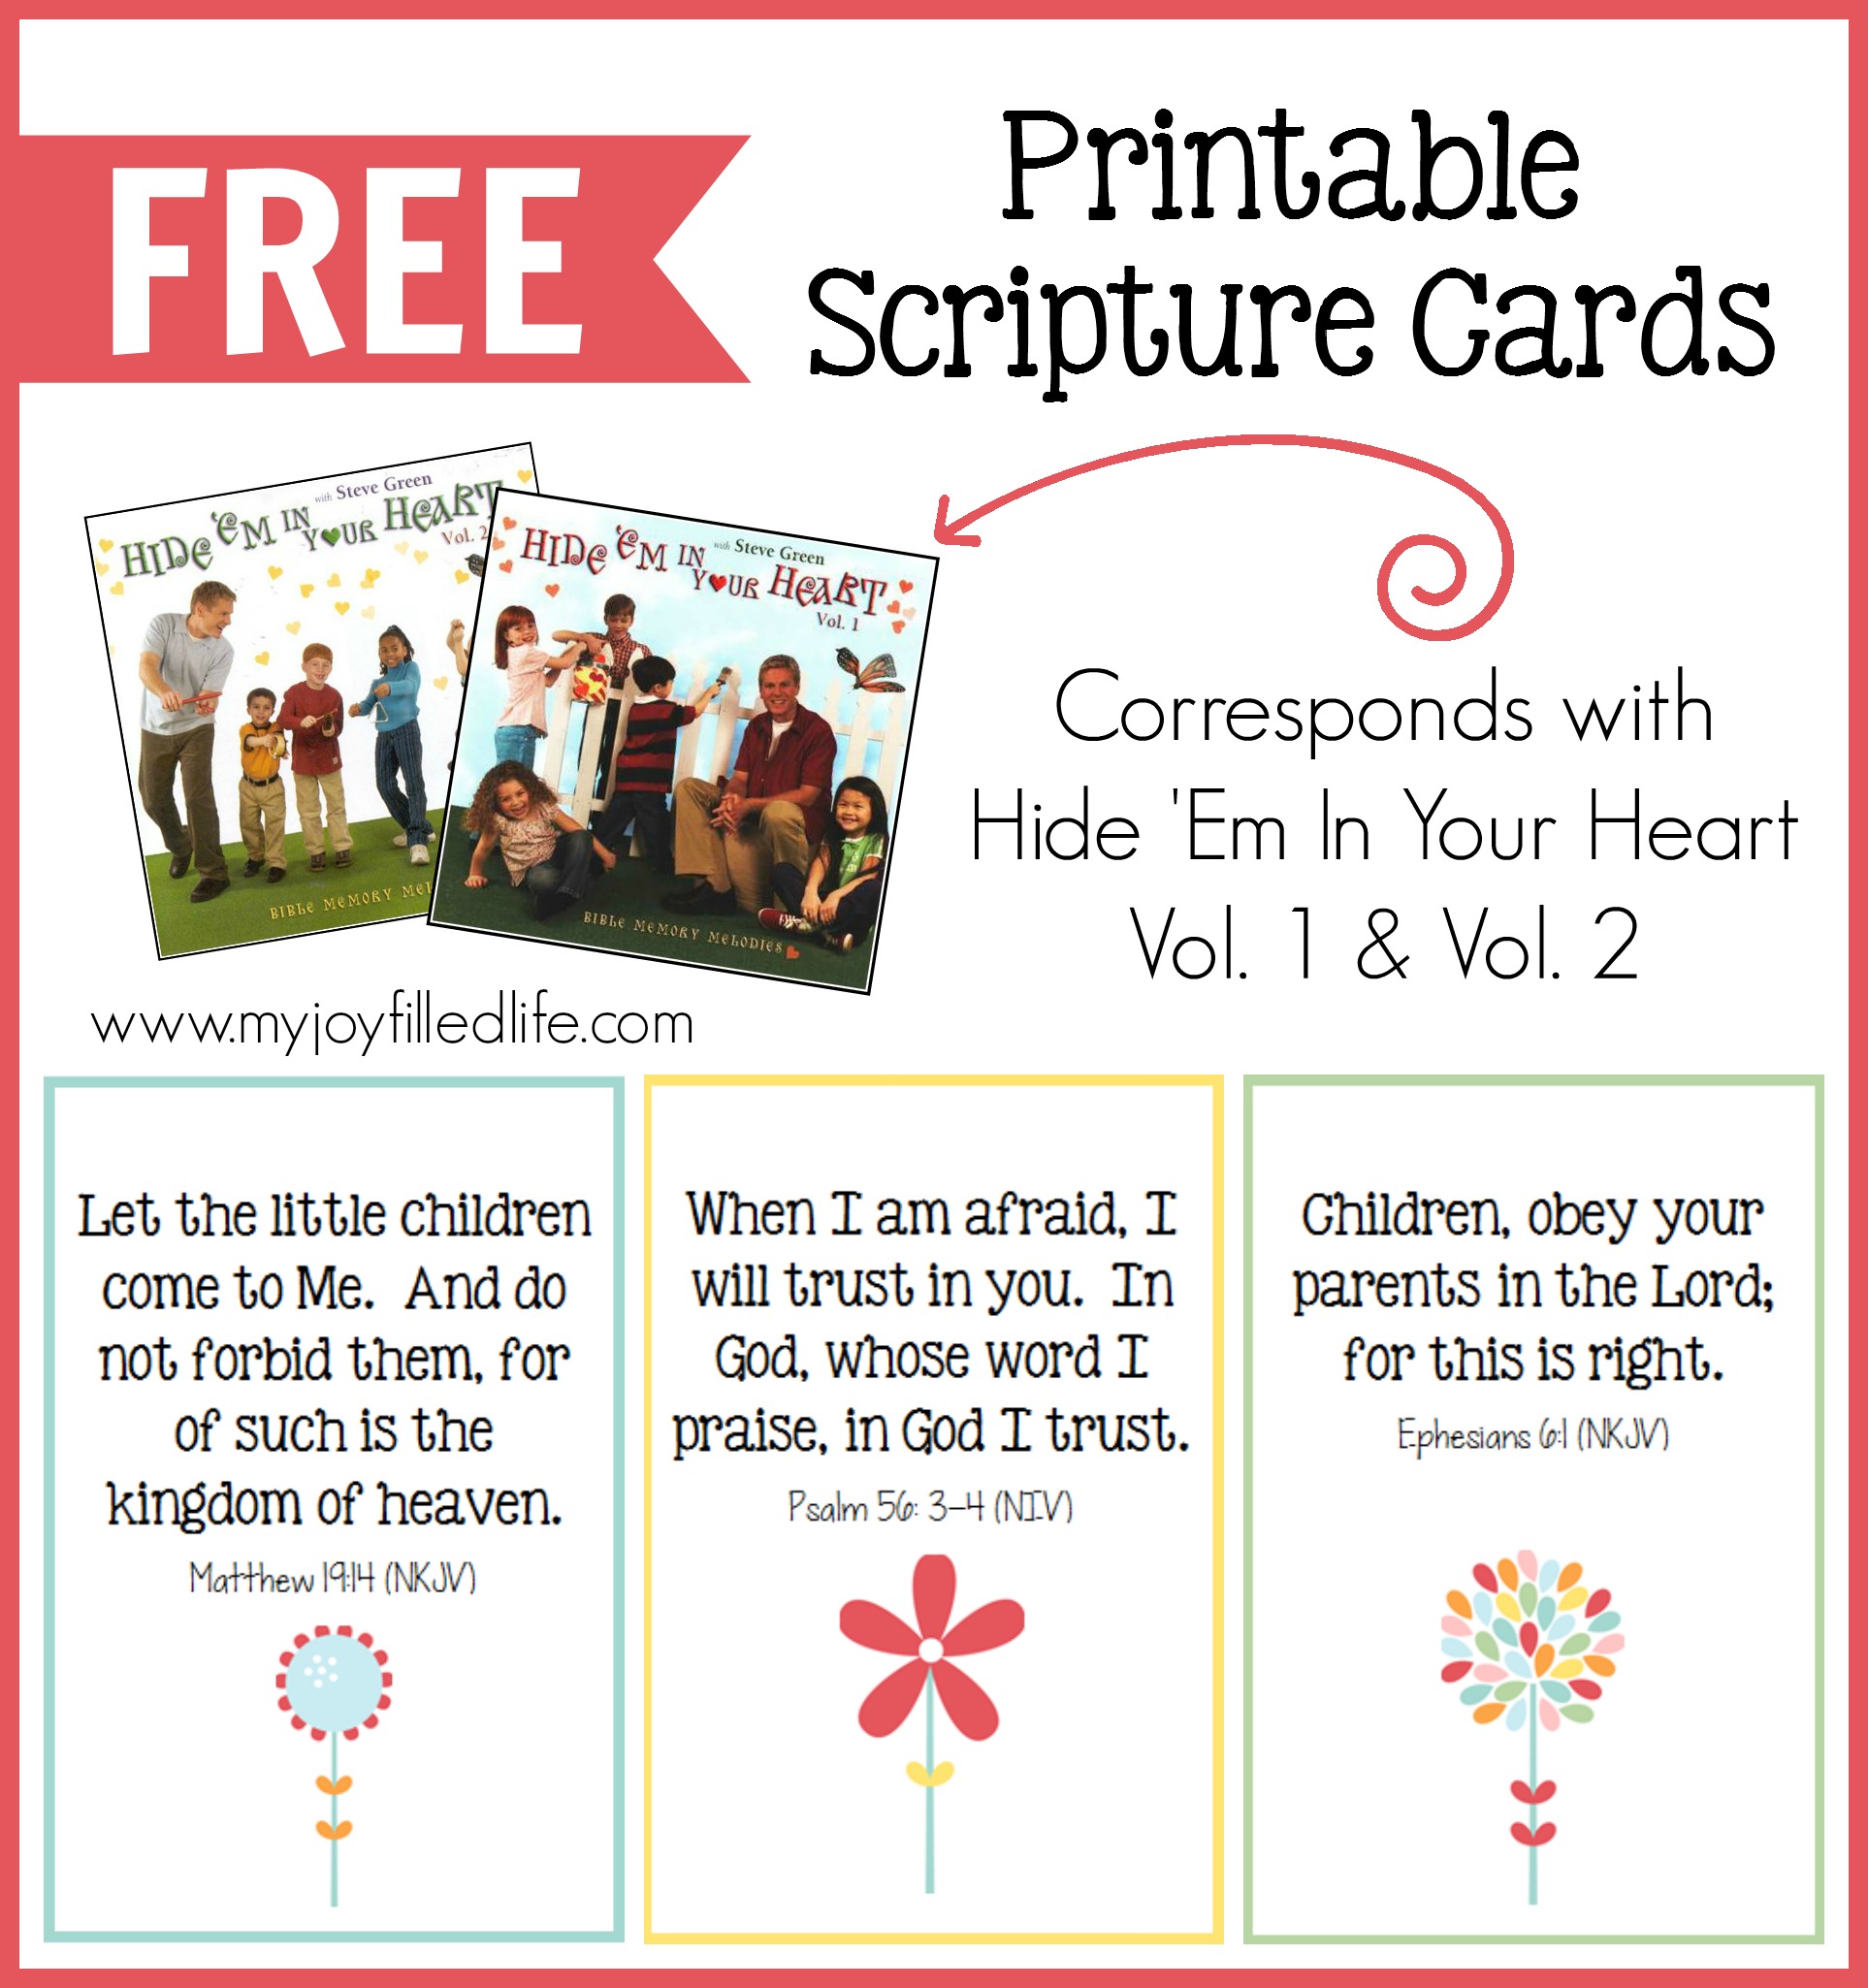 7-best-images-of-printable-scripture-cards-kjv-bible-kjv-bible-verse